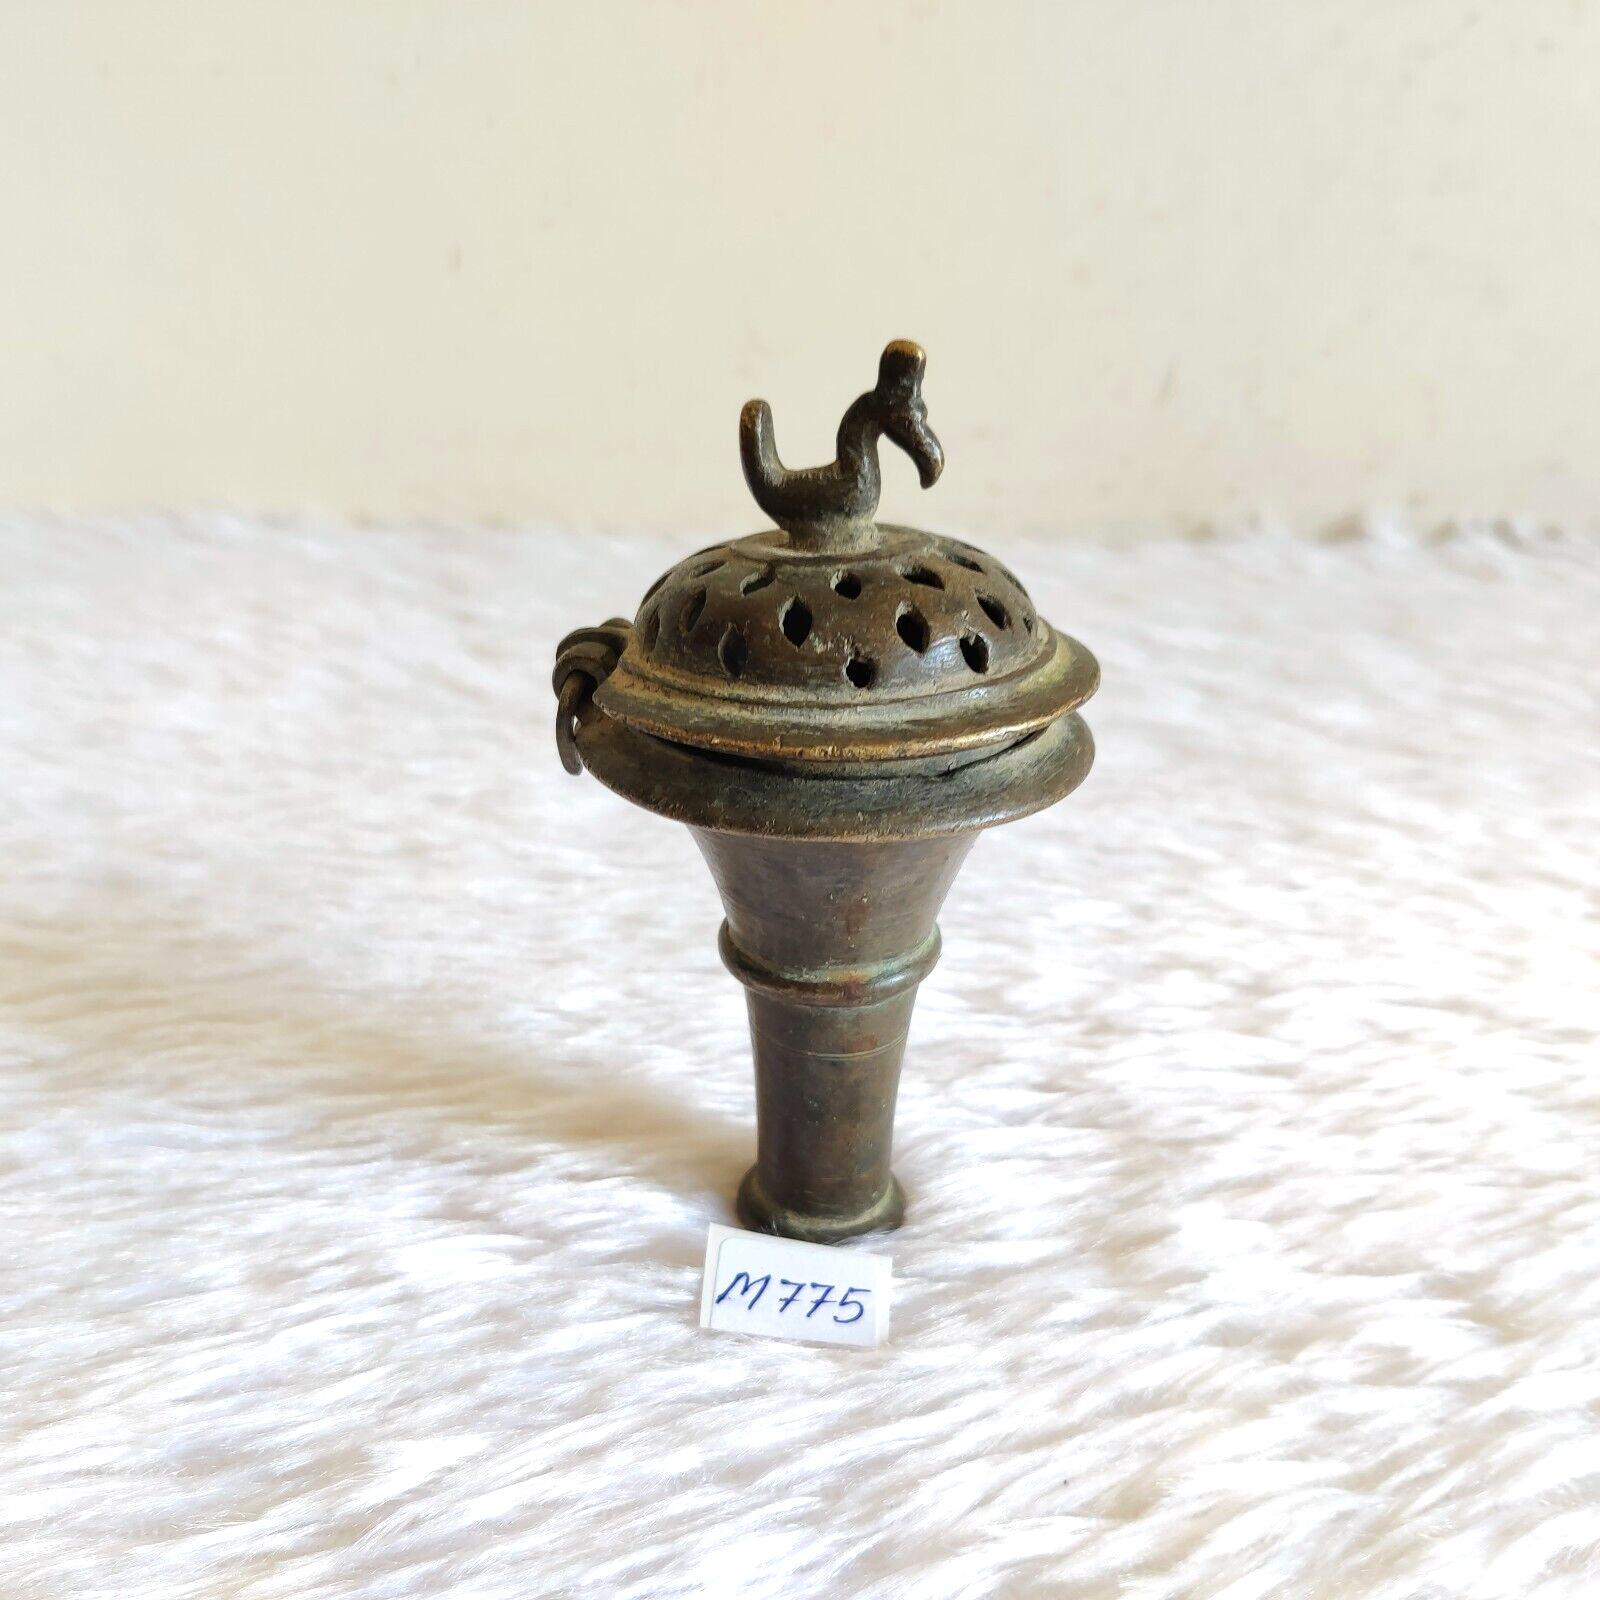 19c Antique Brass Peacock Head Chillum Chilam Tobacco Pipe Rare Collectible M775